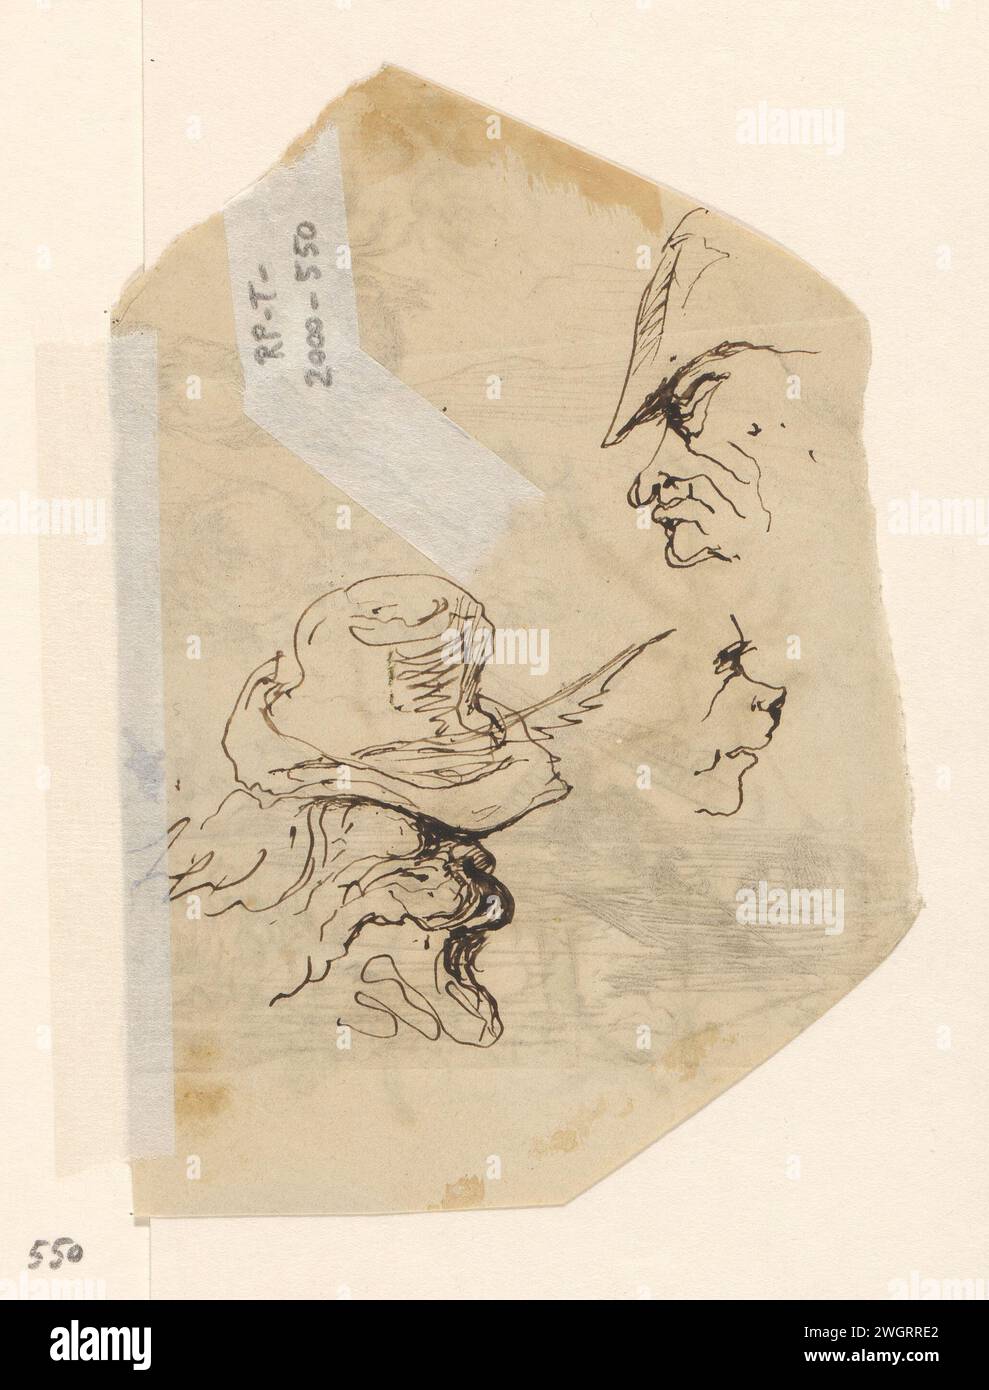 Koppen, Johannes Taventrate, 1840 - 1880 Zeichnungsköpfe. Signiert auf der Rückseite eines Teils eines Umschlags. Papier. Tintenstift Karikaturen (menschliche Typen) Stockfoto